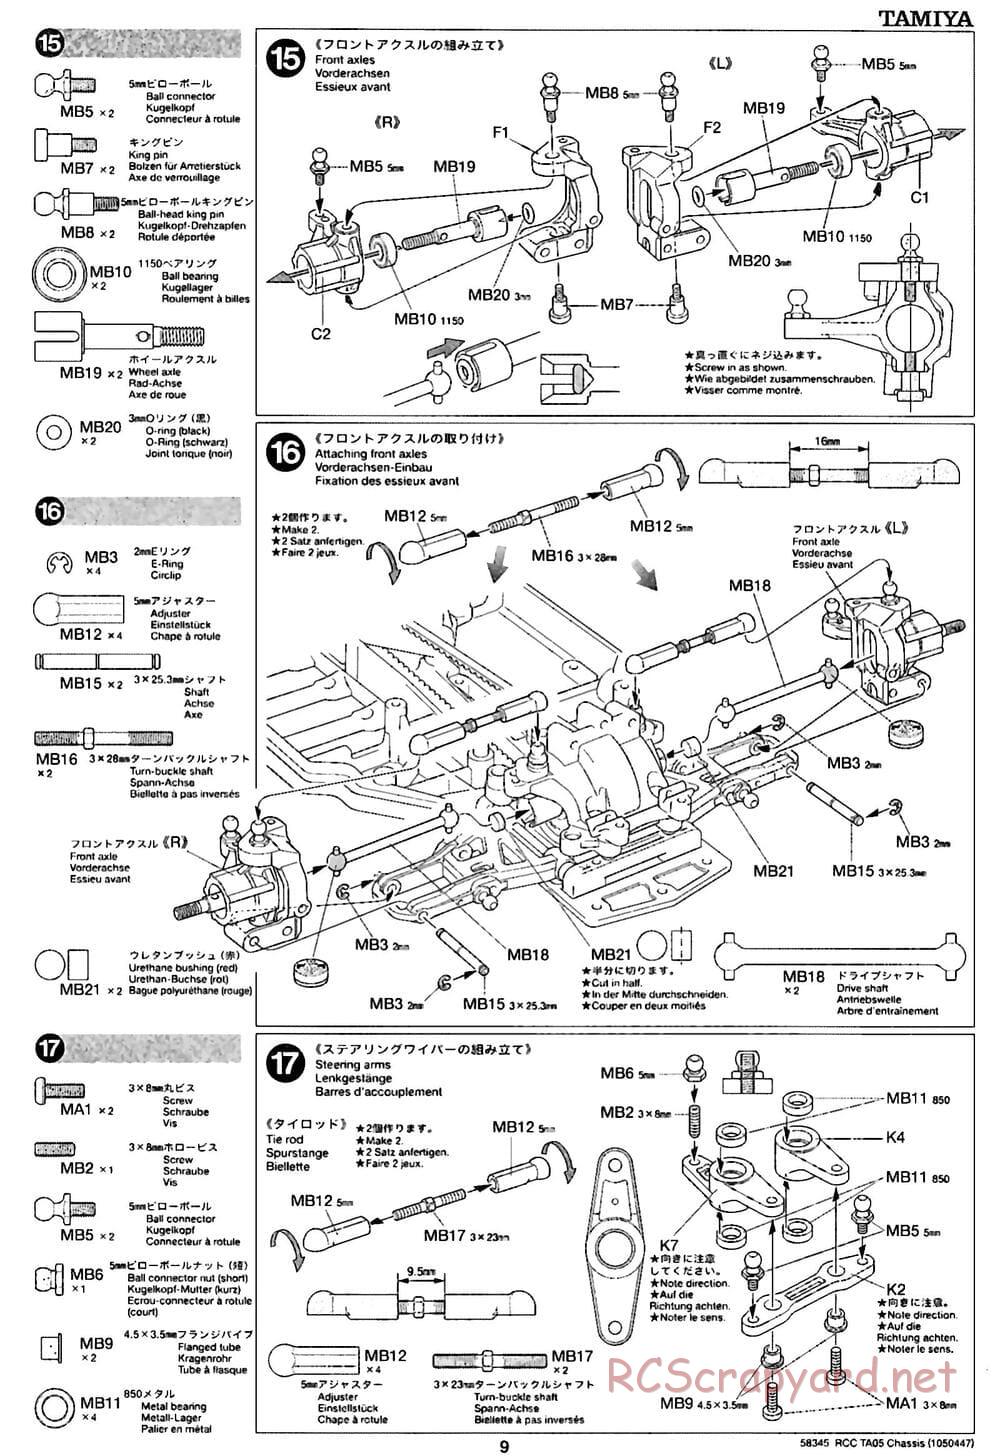 Tamiya - TA05 Chassis - Manual - Page 9